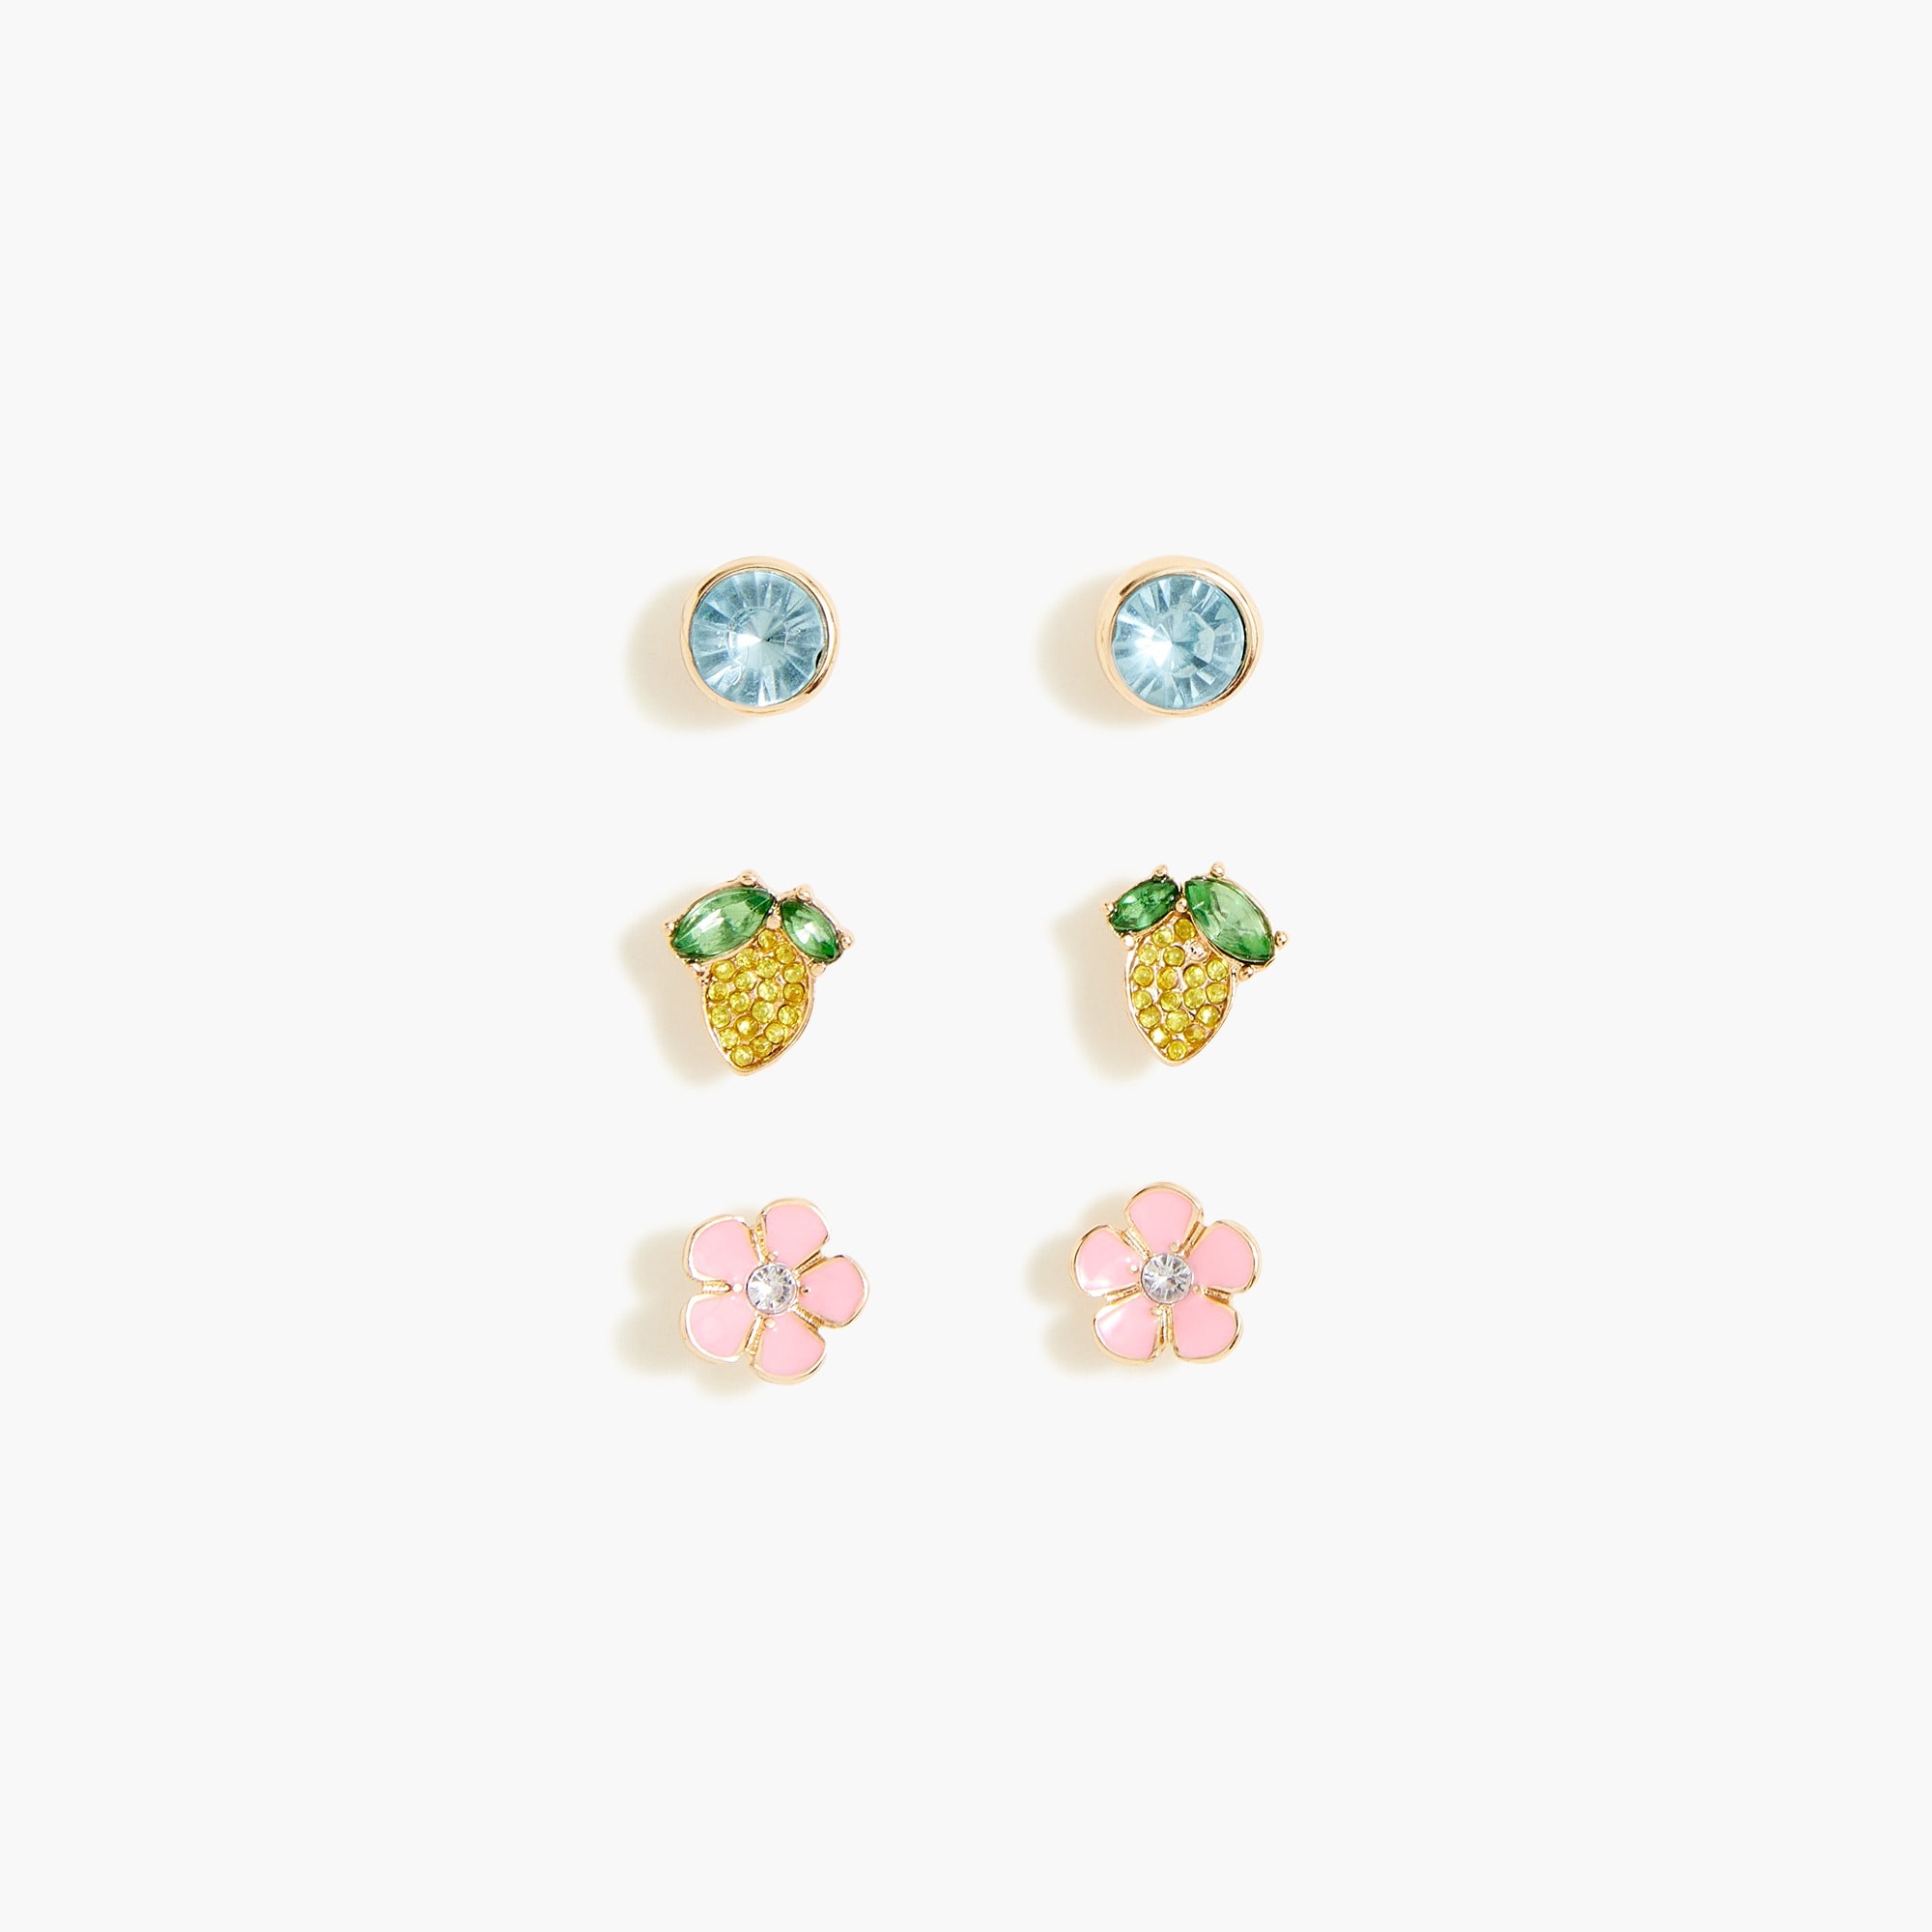 girls Girls' lemon earrings set-of-three